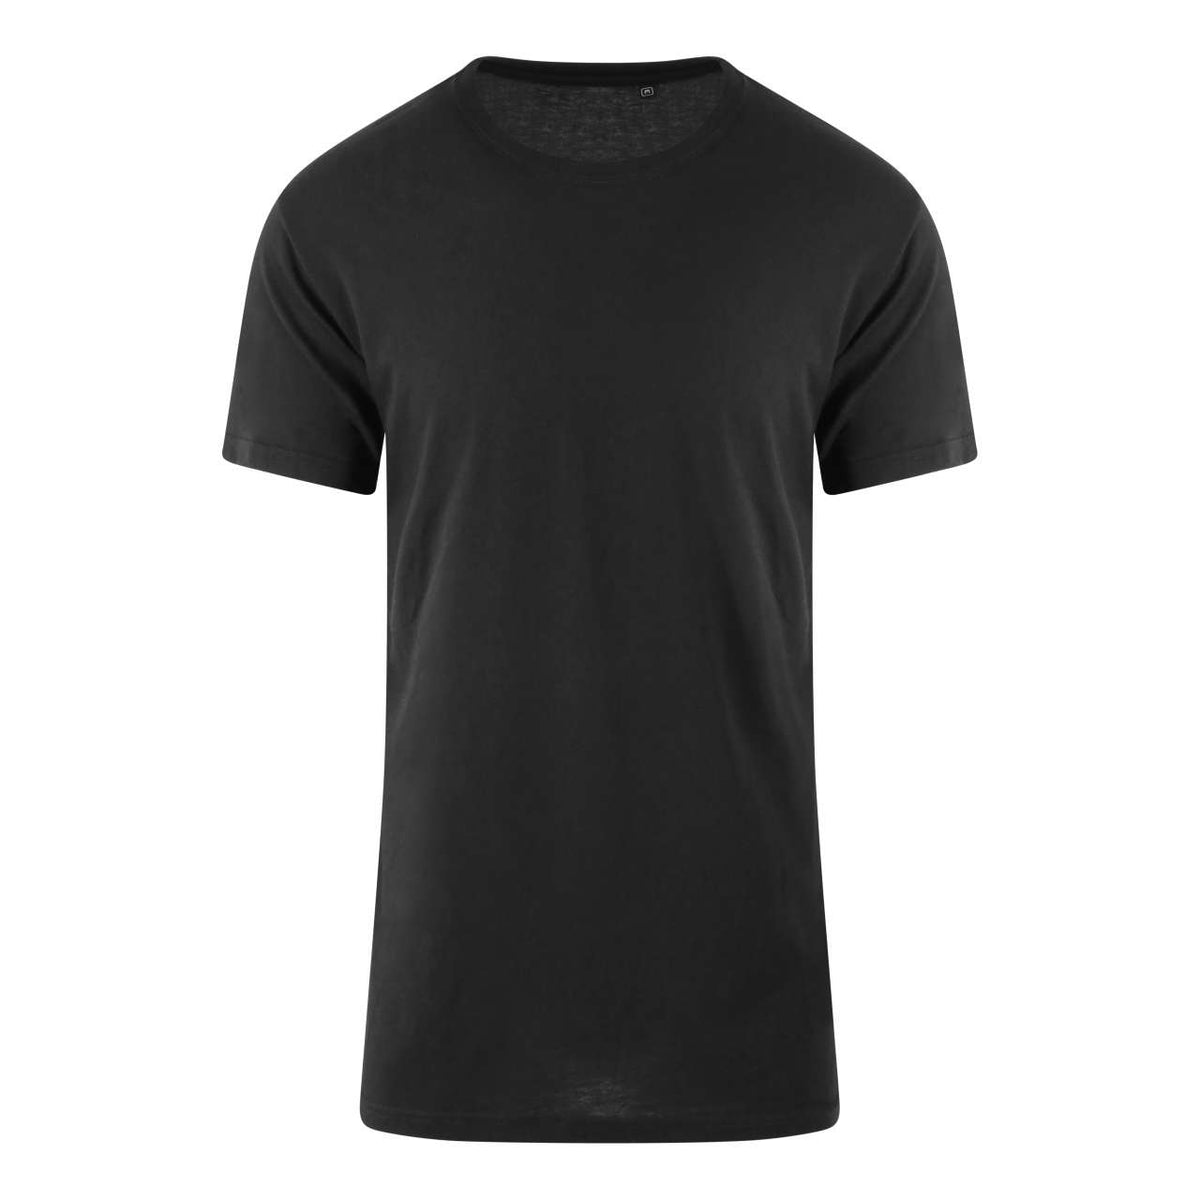 Just Ts Herren T-Shirt Basic Shirts Kurzarm V-Ausschnitt Shirt